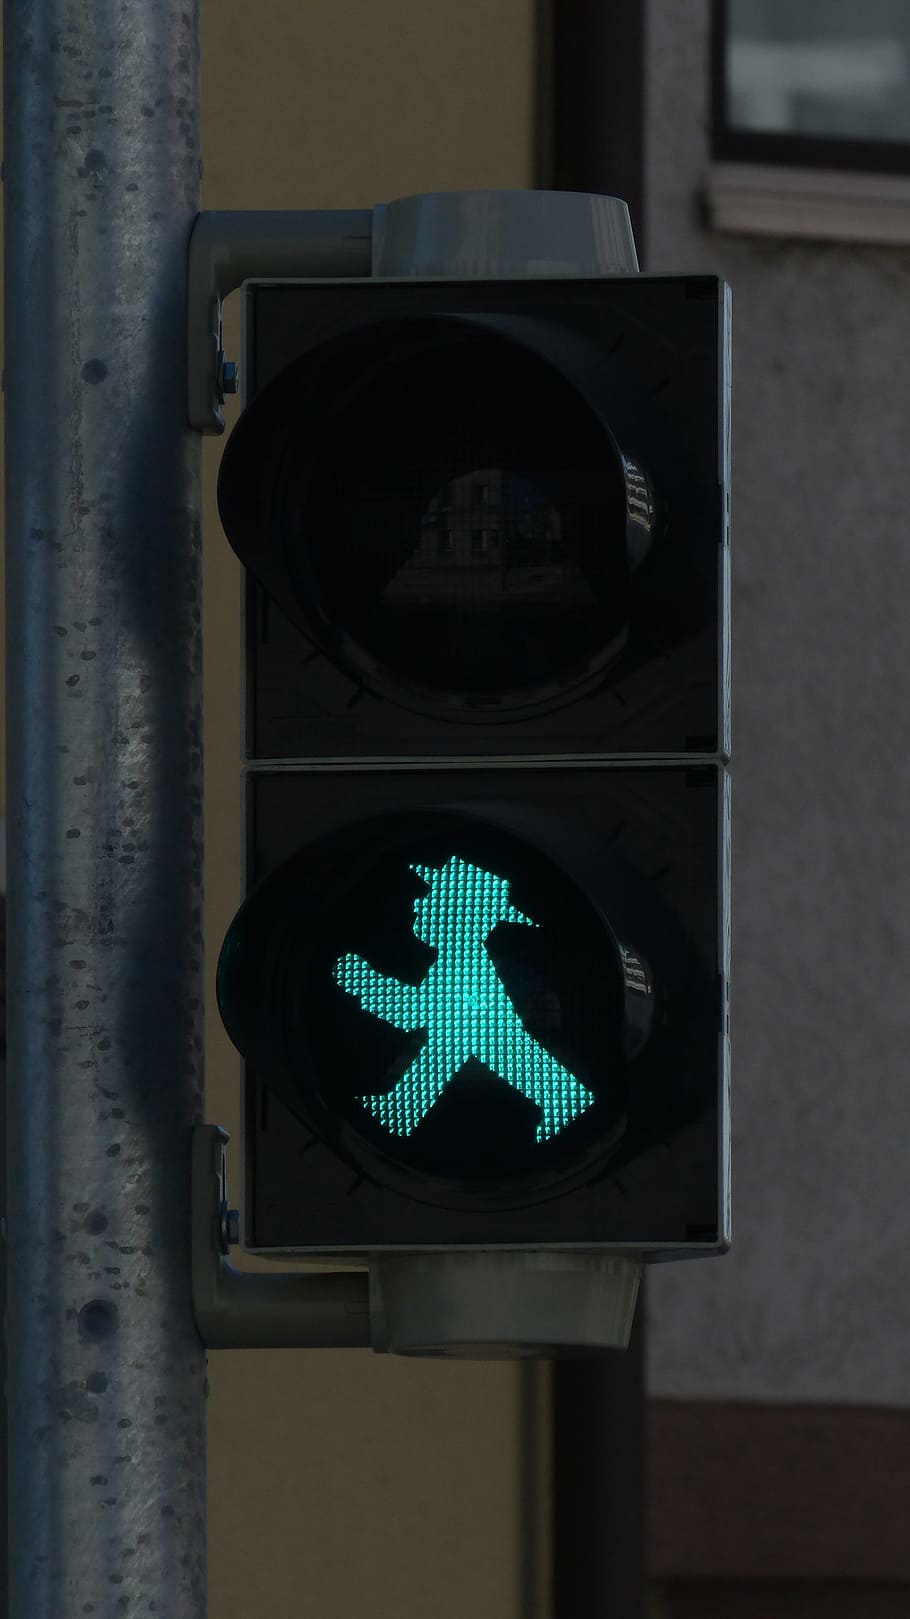 少し, 緑, 男, リトルグリーンマン, 信号機, 歩道橋, 交通信号, 男性, 光信号, フットギア男性